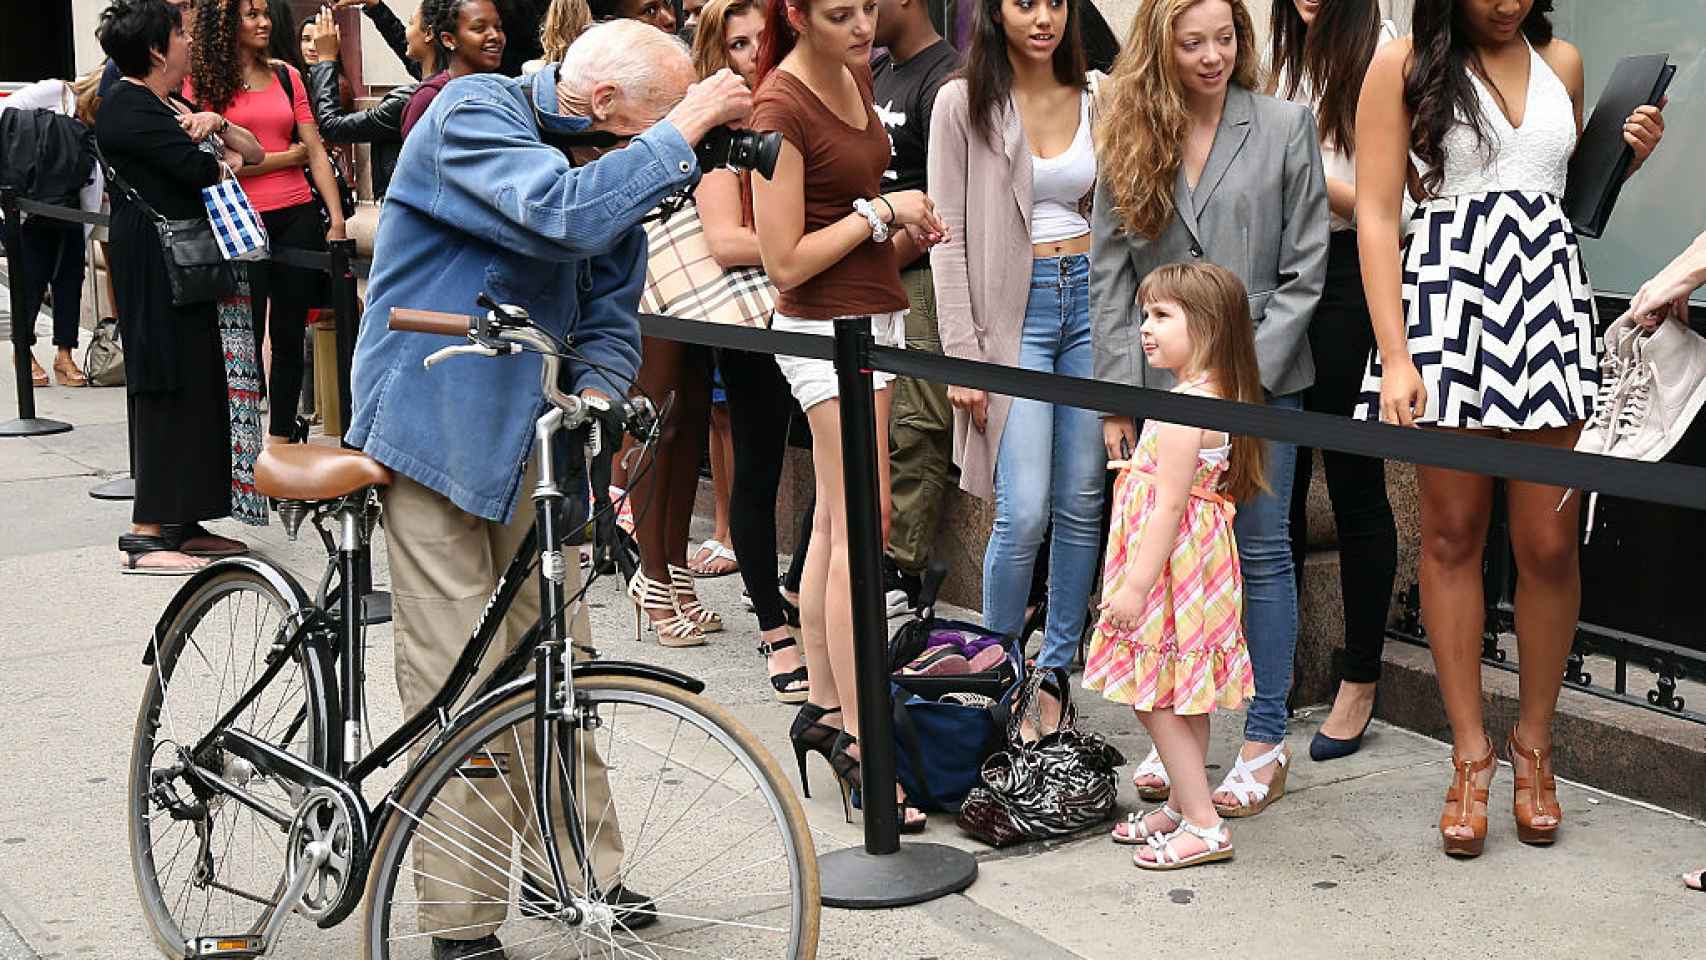 Bill recorrió Nueva York en su bicicleta, buscando siempre la mejor fotografía. | Foto: Getty Images.